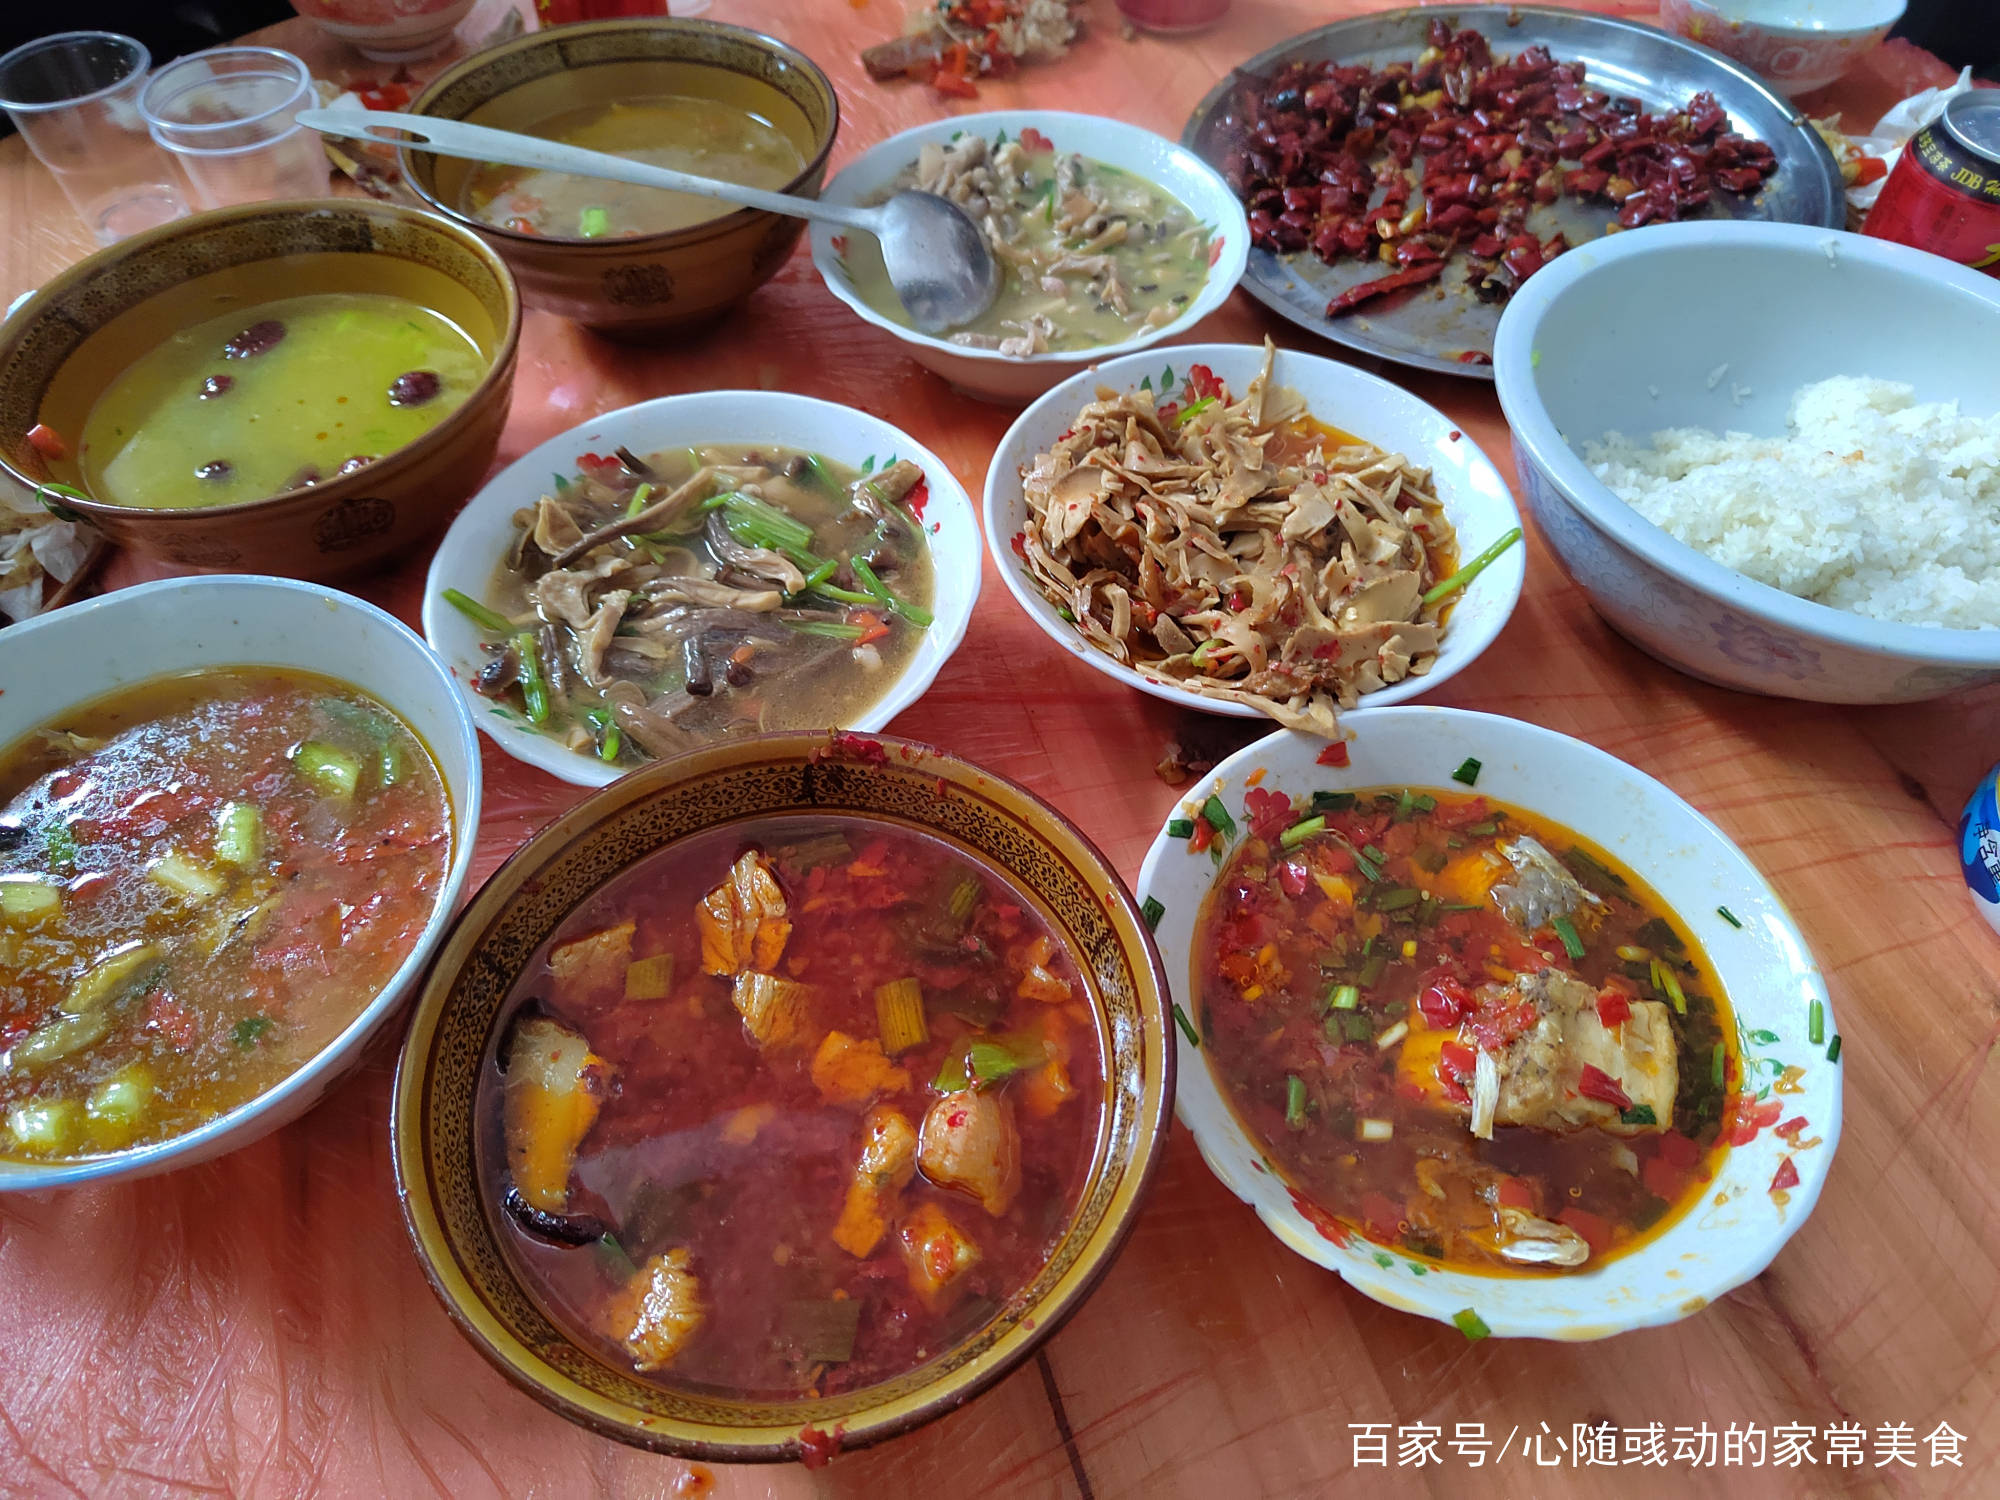 安徽农村大席700块钱24个菜2个汤，个个摆盘精致，一点不比酒店差 - 哔哩哔哩